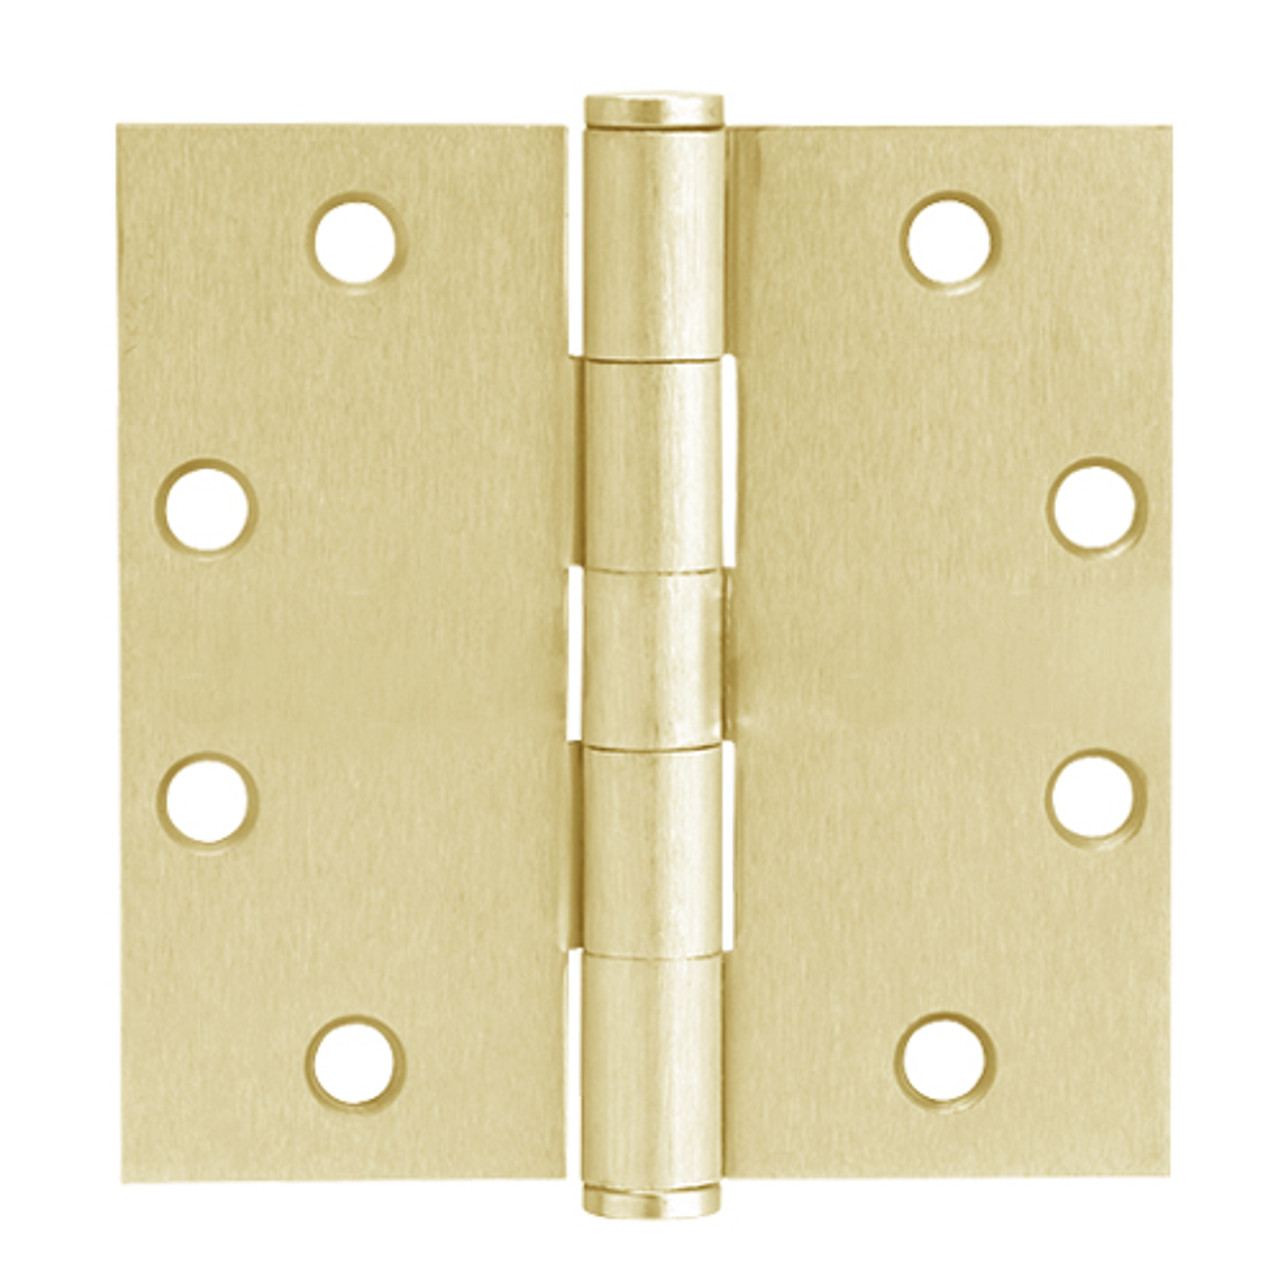 5PB1-4-5x4-606 IVES 5 Knuckle Plain Bearing Full Mortise Hinge in Satin Brass